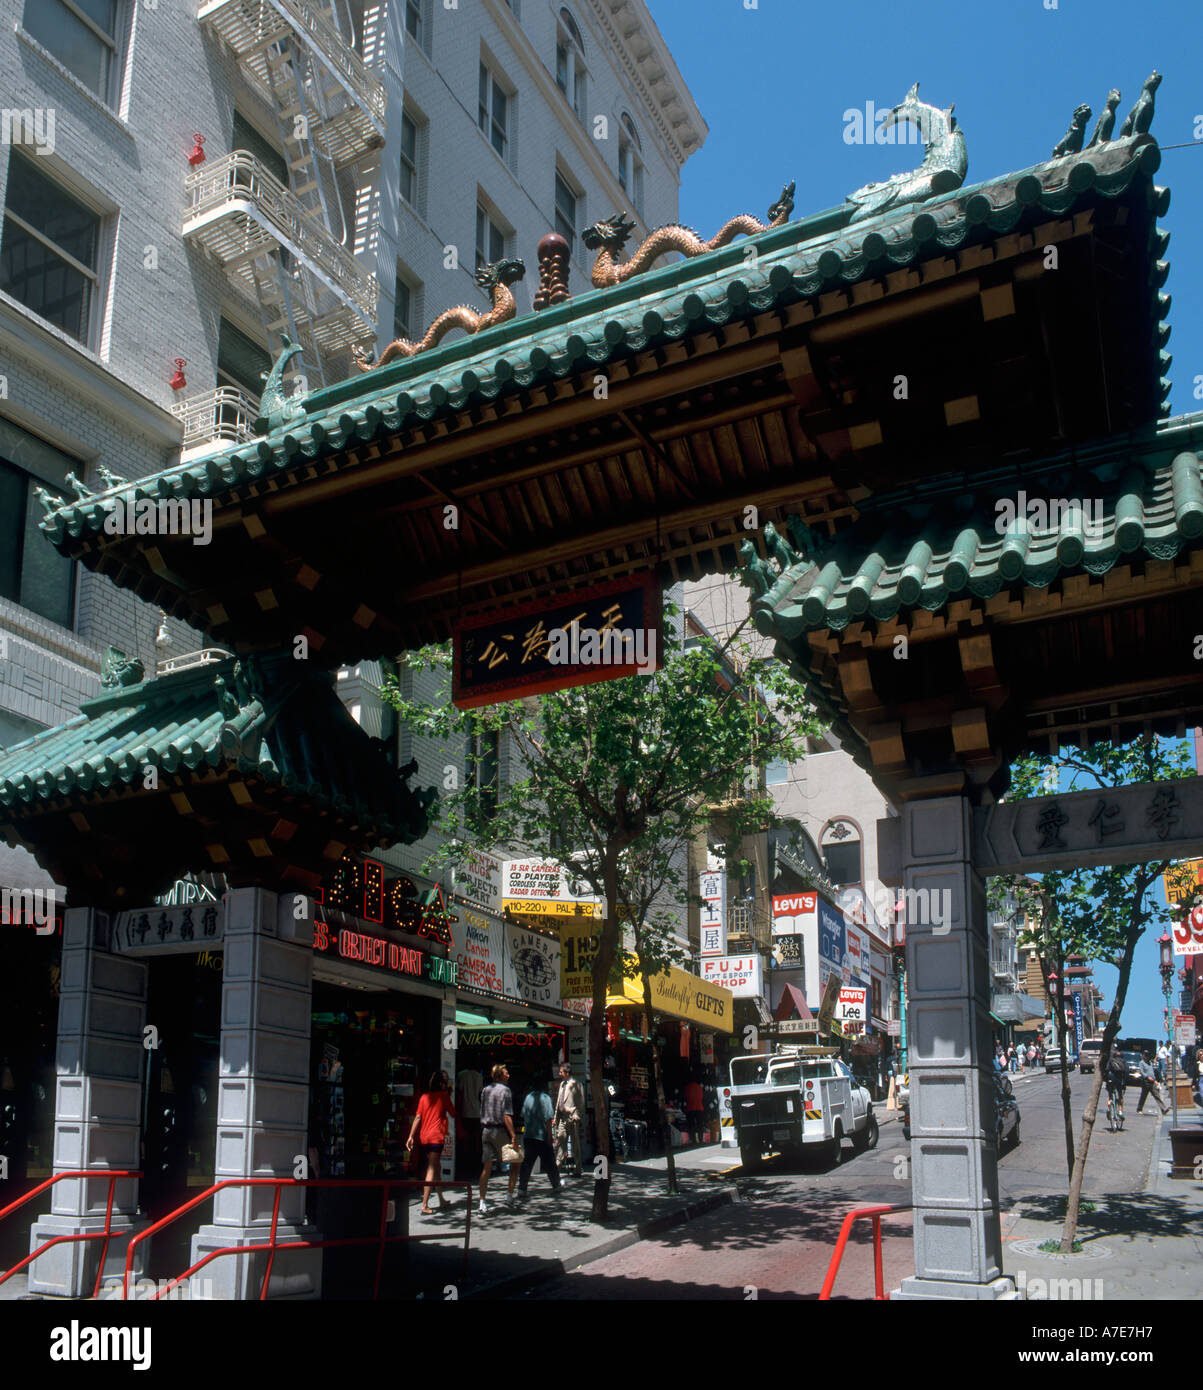 Ingresso a Chinatown su Grant Avenue all'intersezione con Bush Street di San Francisco, California, Stati Uniti d'America Foto Stock